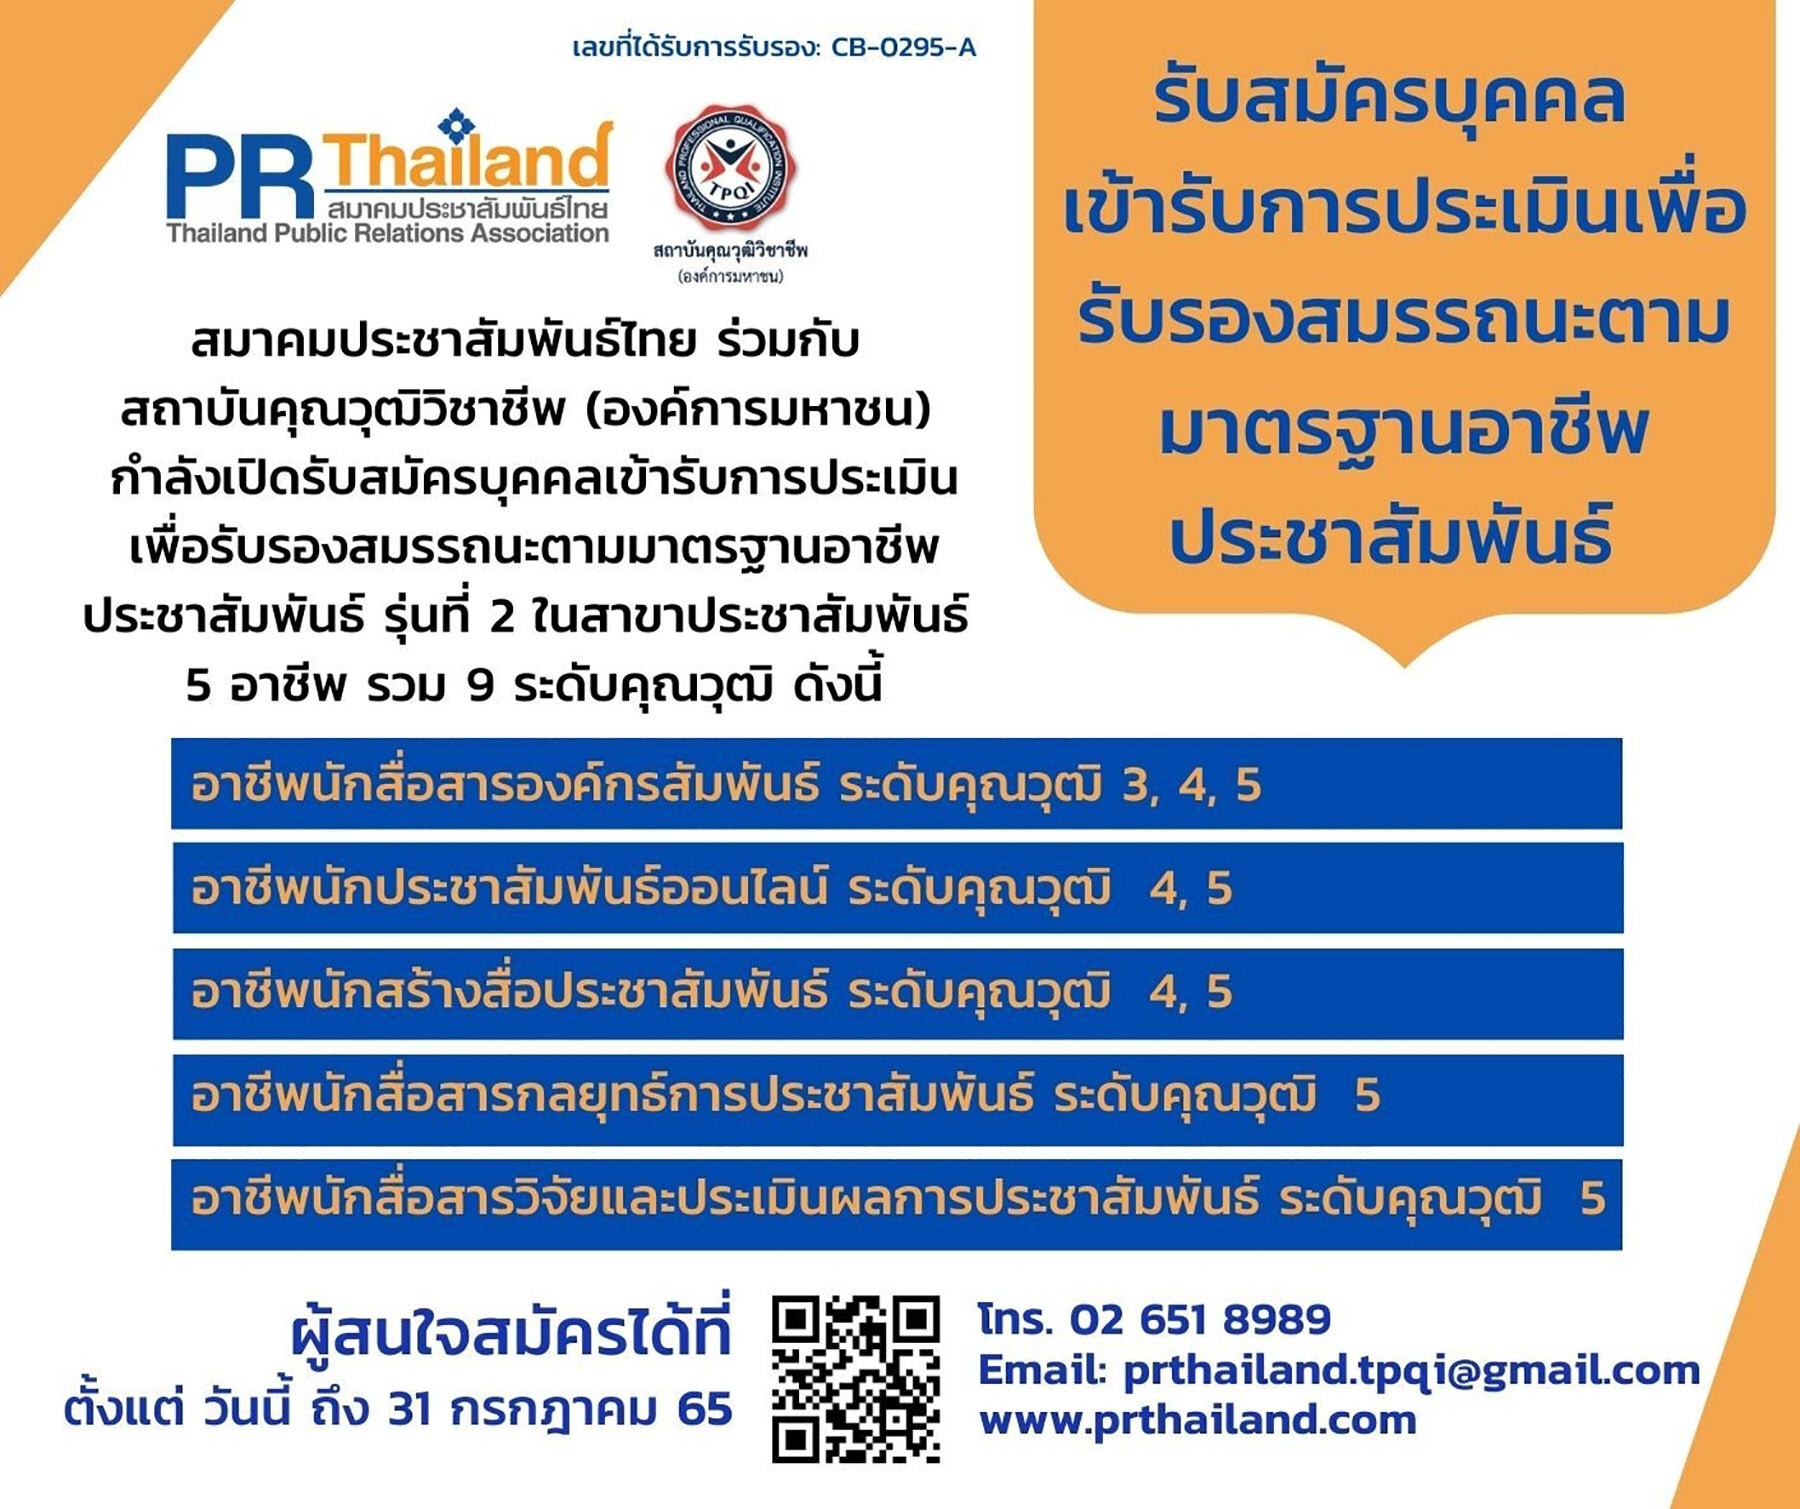 สมาคมประชาสัมพันธ์ไทย ร่วมกับ สถาบันคุณวุฒิวิชาชีพ เปิดรับการประเมินเพื่อรับรองสมรรถนะ ตามมาตรฐานคุณวุฒิอาชีพประชาสัมพันธ์ ครั้งที่ 2/2565 ถึง 31 กรกฏาคม นี้